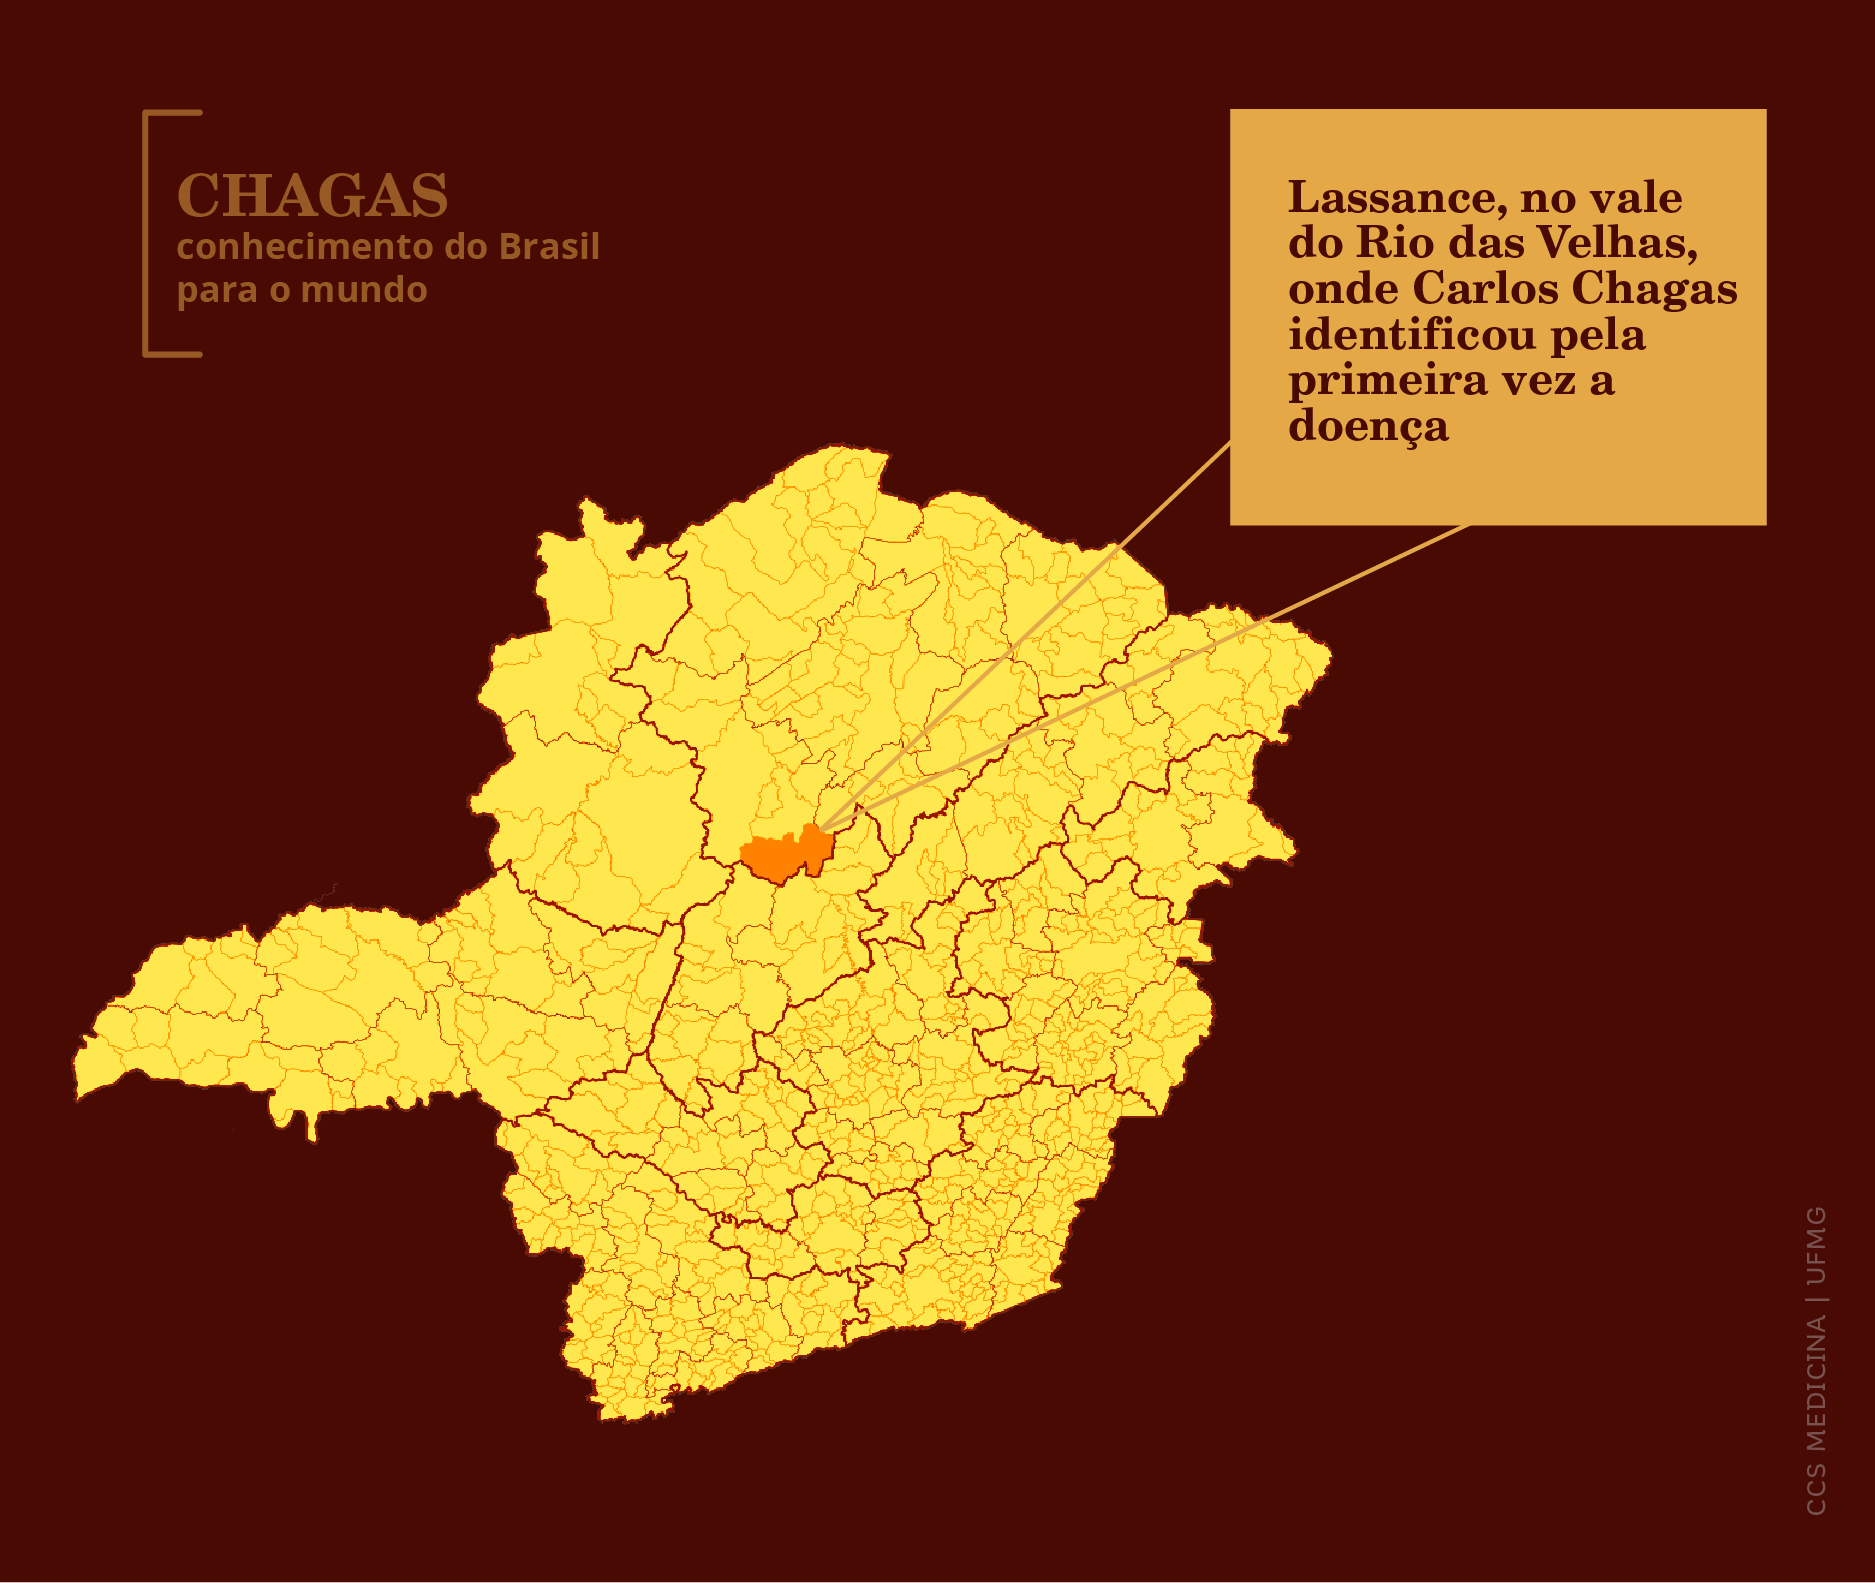 Mapa do estado de Minas Gerais indicando localização da cidade de Lassance. Texto: Lassance, no vale do Rio das Velhas, onde Carlos Chagas identificou pela primeira vez a doença.